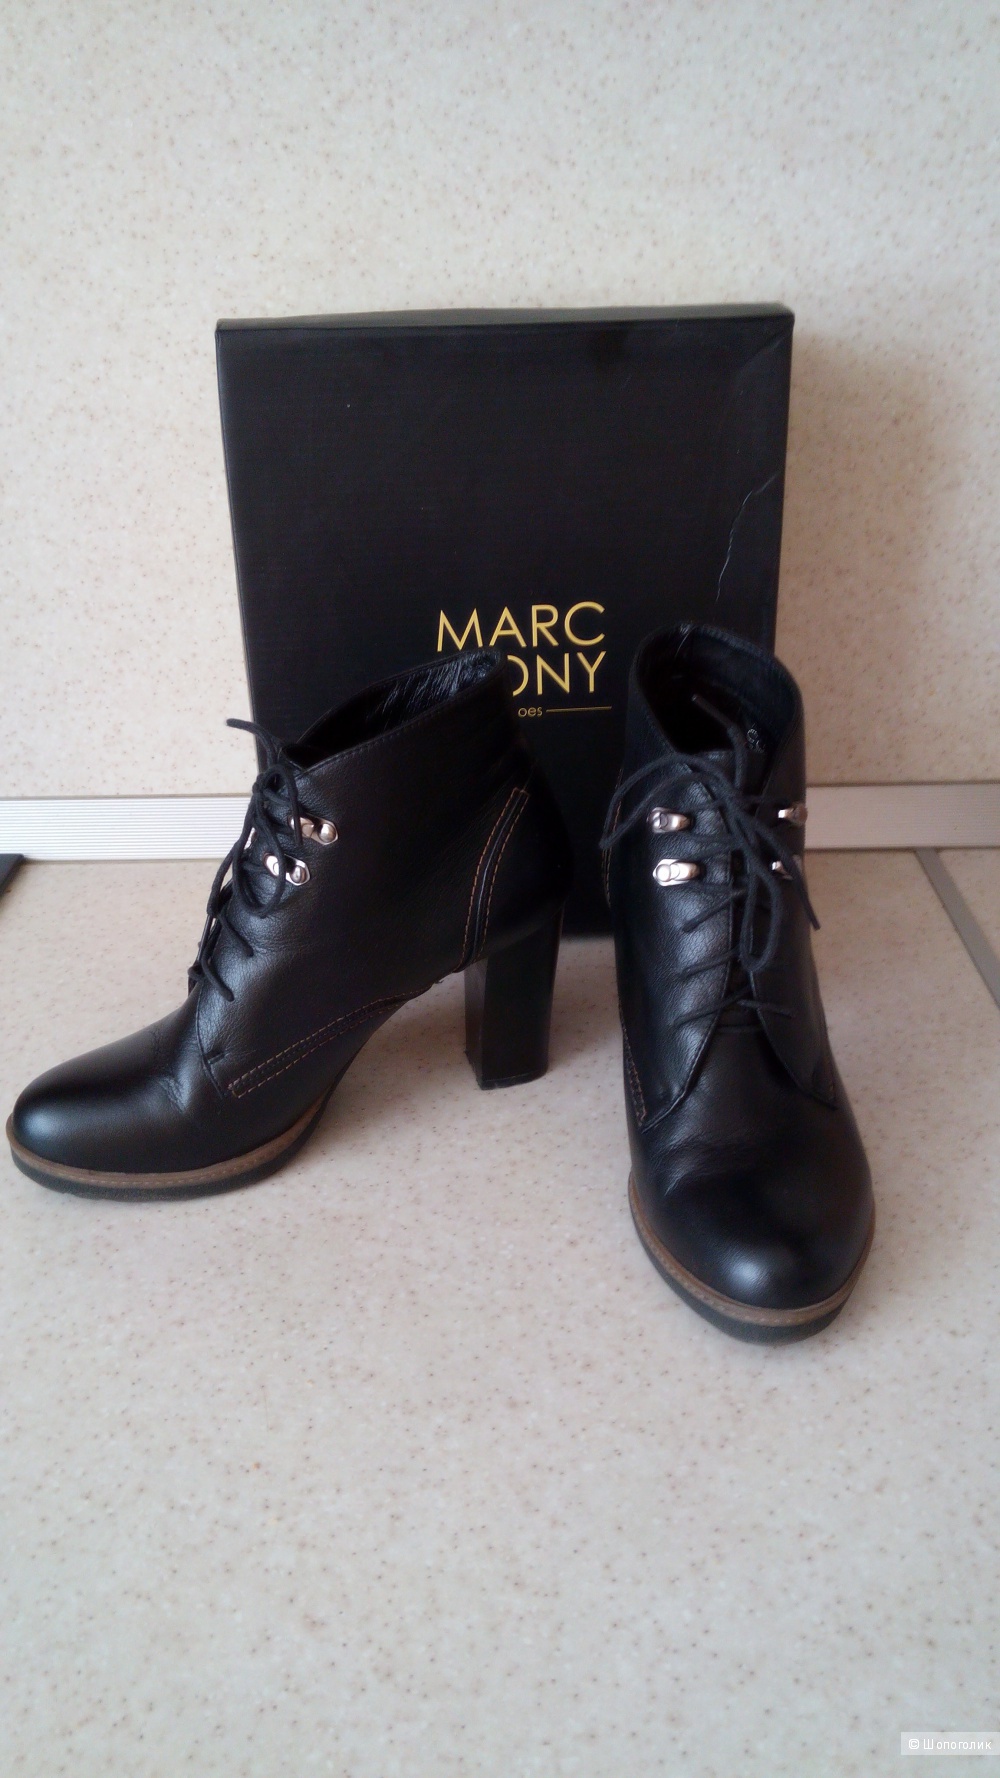 Ботинки Marc Cony на 37,5-38 (кожа)